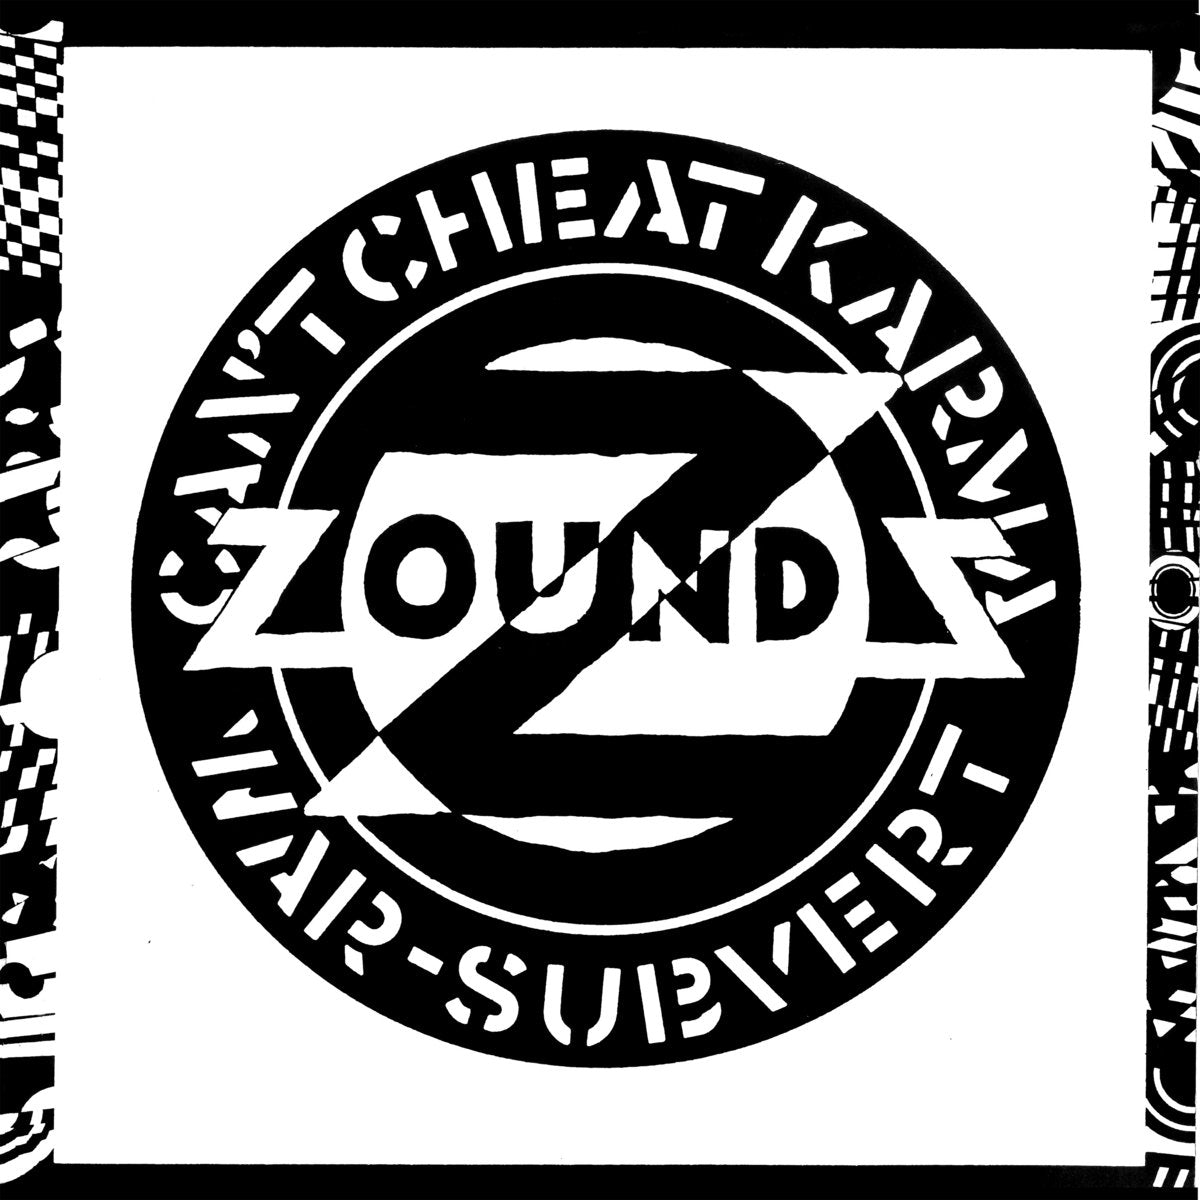 Zounds - Can't Cheat Karma b/w War + Subvert 12" - Vinyl - One Little Independent